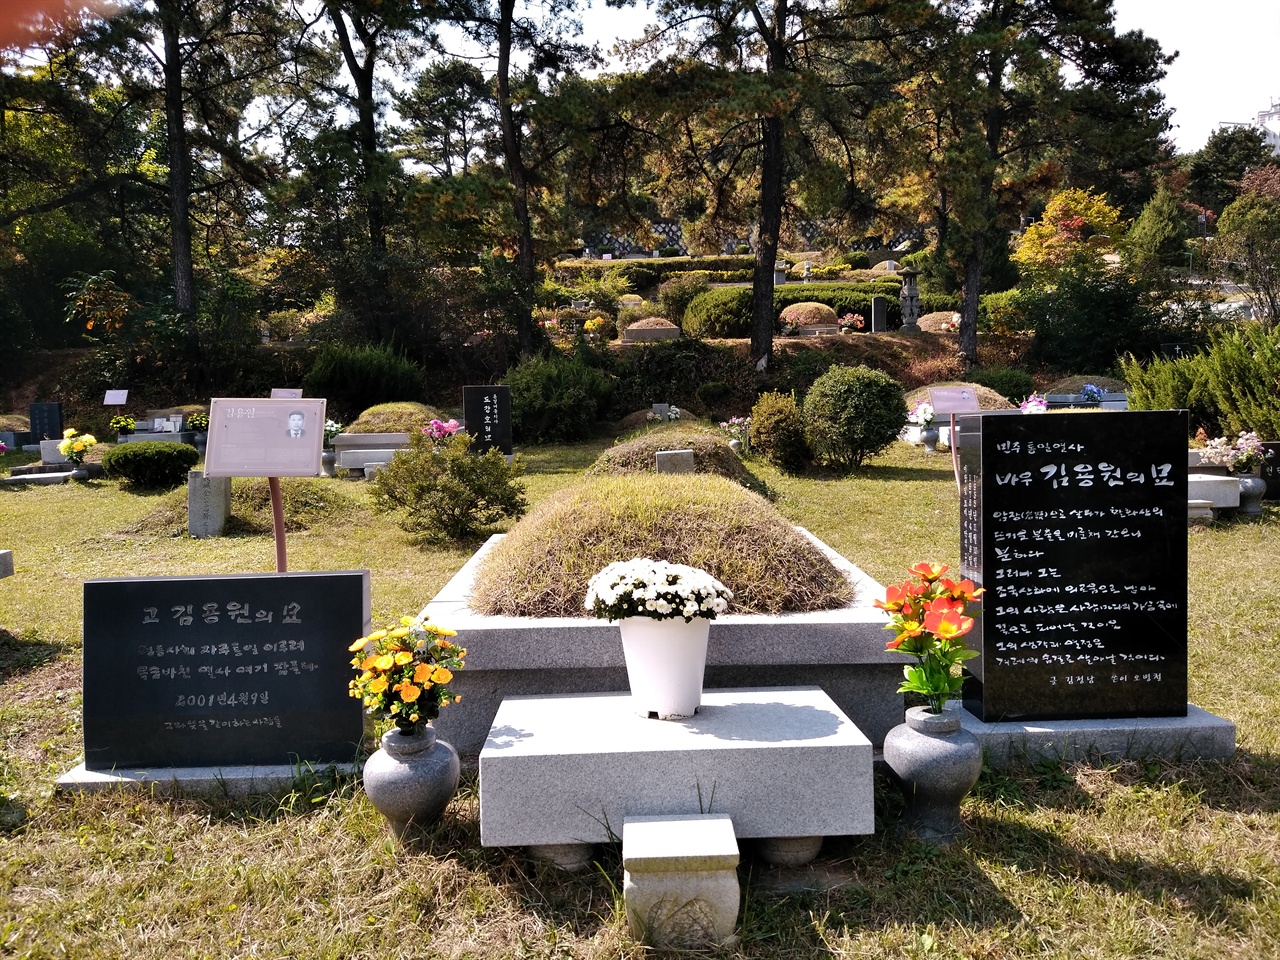 인혁당재건위의 김용원의 묘는 마석모란공원에 있었는데, 지난 10월 18일 인혁당재건위 사건 관련자들이 묻혀 있는 <이천 민주공원>으로 이장하였다. 